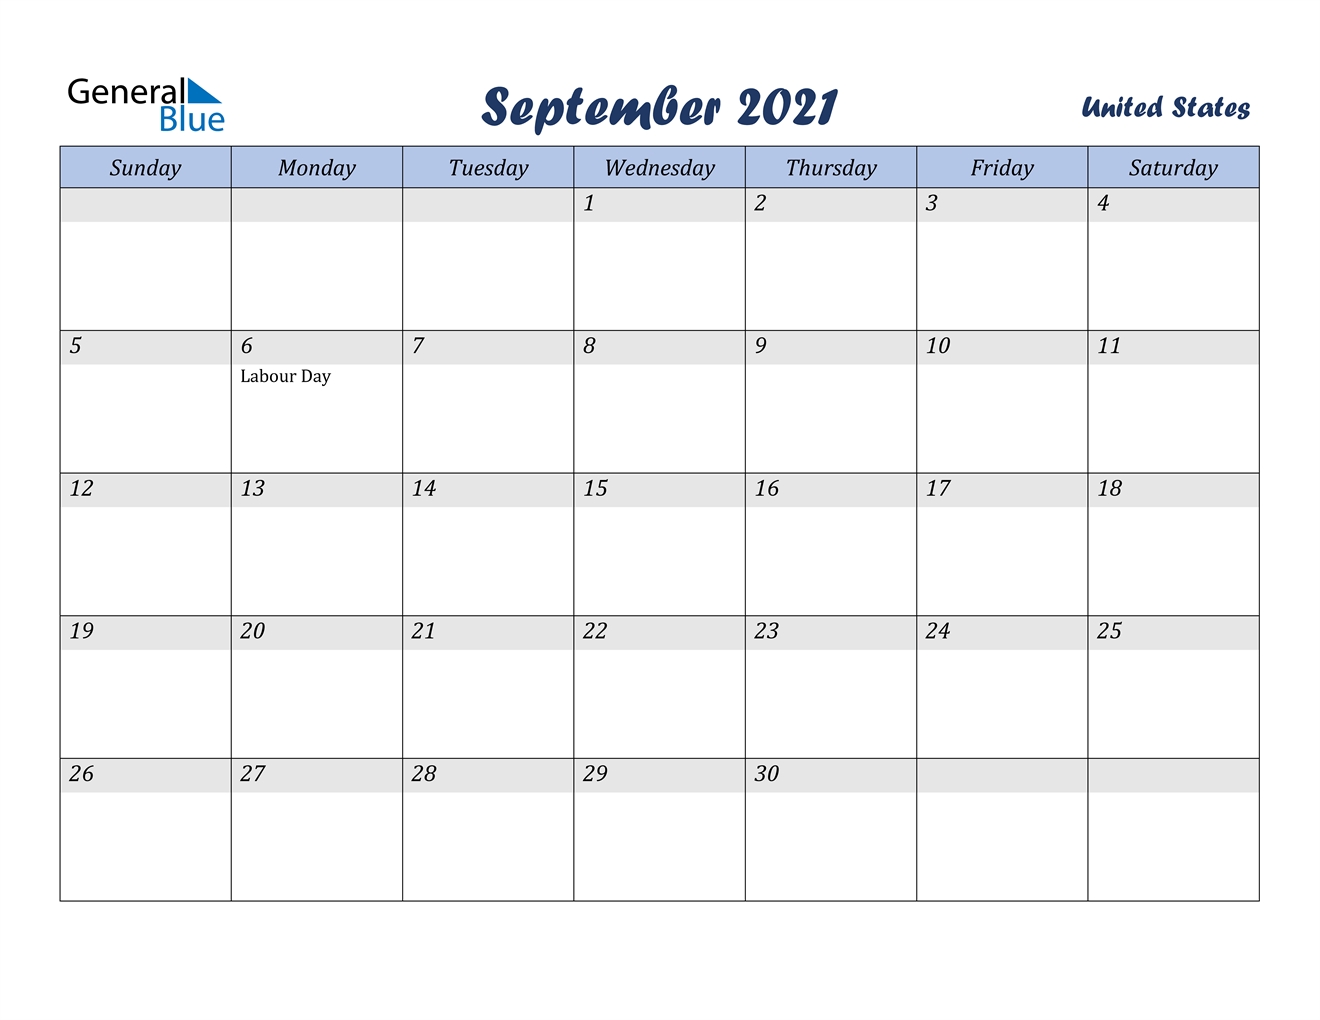 September 2021 Calendar - United States September 2021 Monthly Calendar